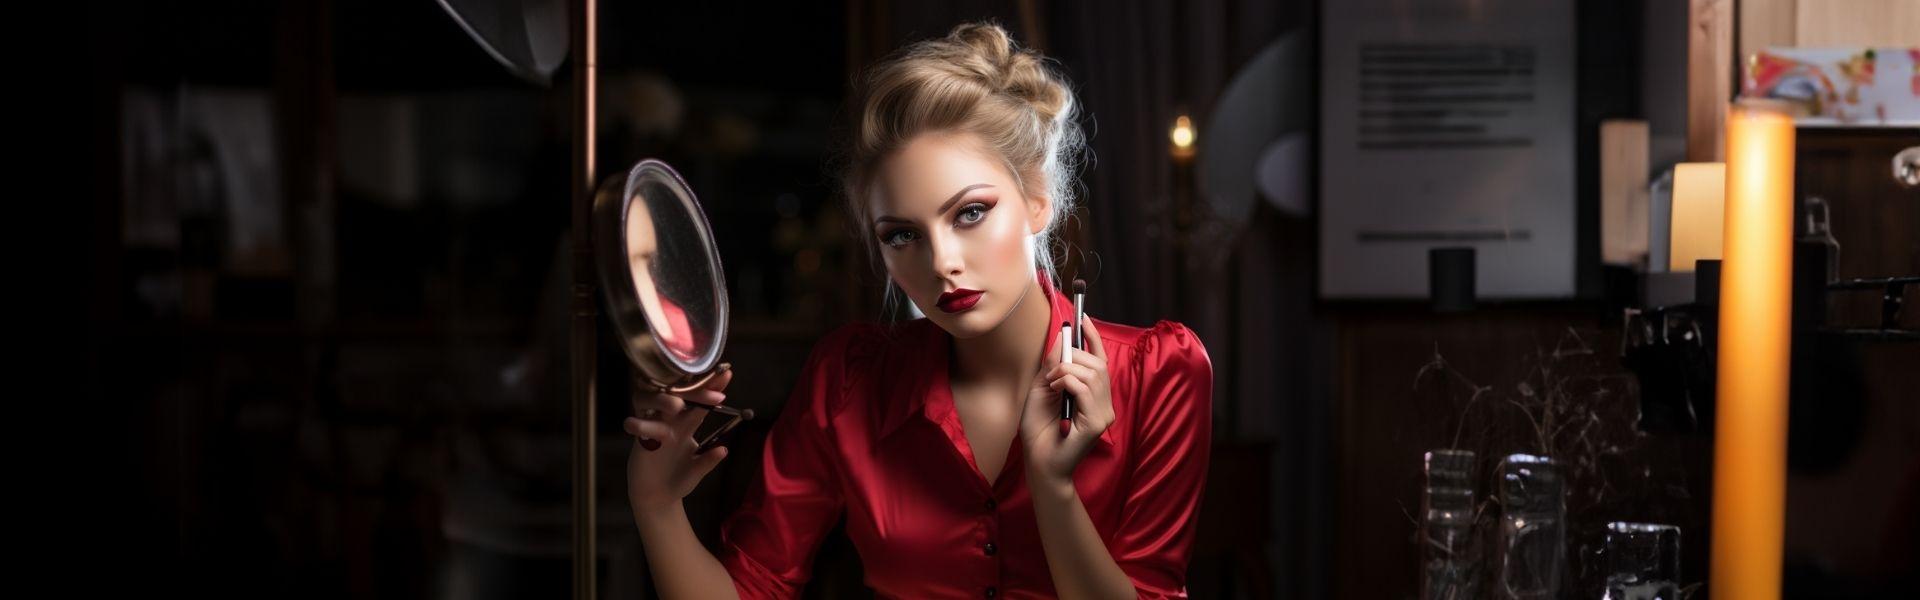 Vrouw in een luxe kamer kijkt in een spiegel en is in rood aangekleed.